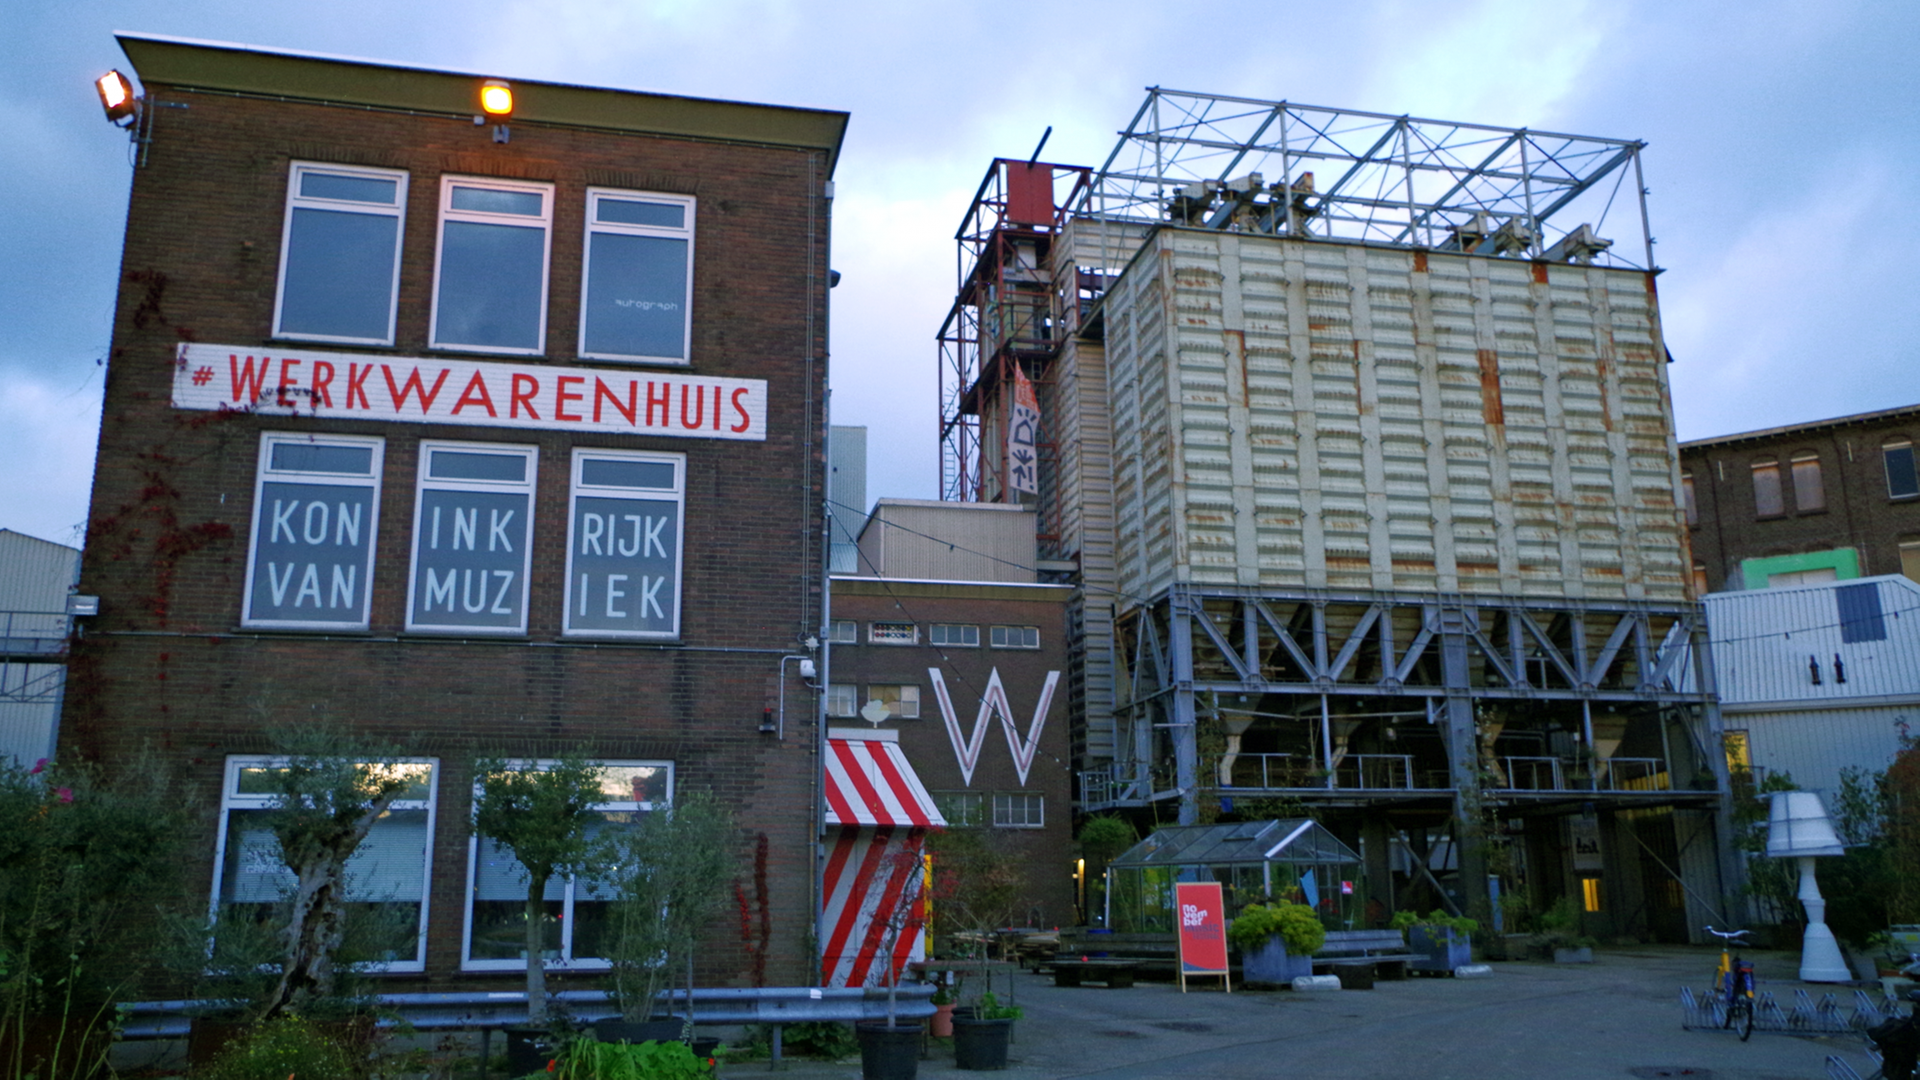 Außenansicht des Werkwarenhuis in s‘Hertogenbosch